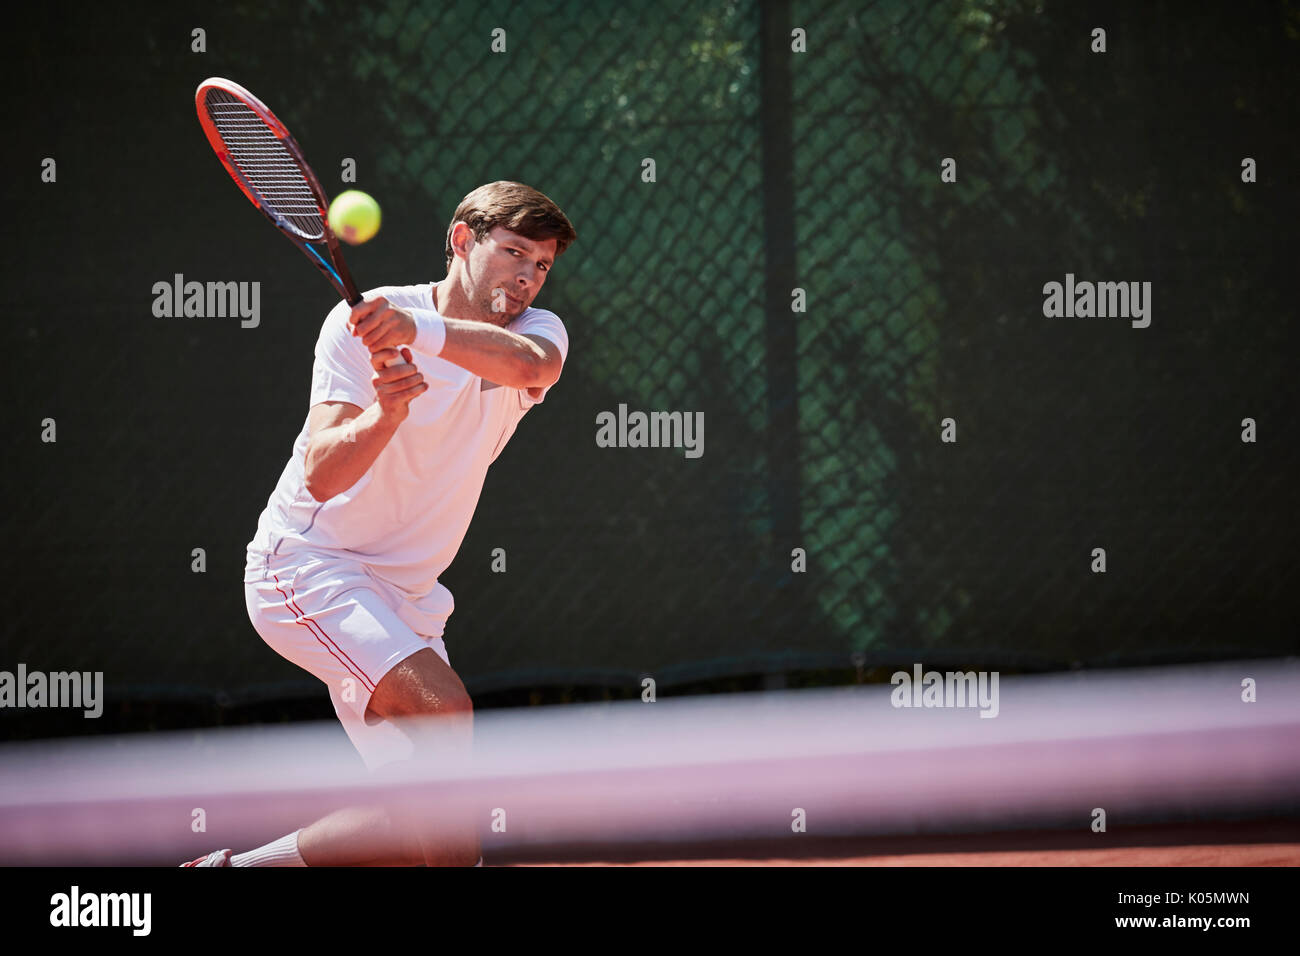 Maschio giovane giocatore di tennis giocando a tennis, colpendo la palla sul soleggiato Campo da tennis Foto Stock